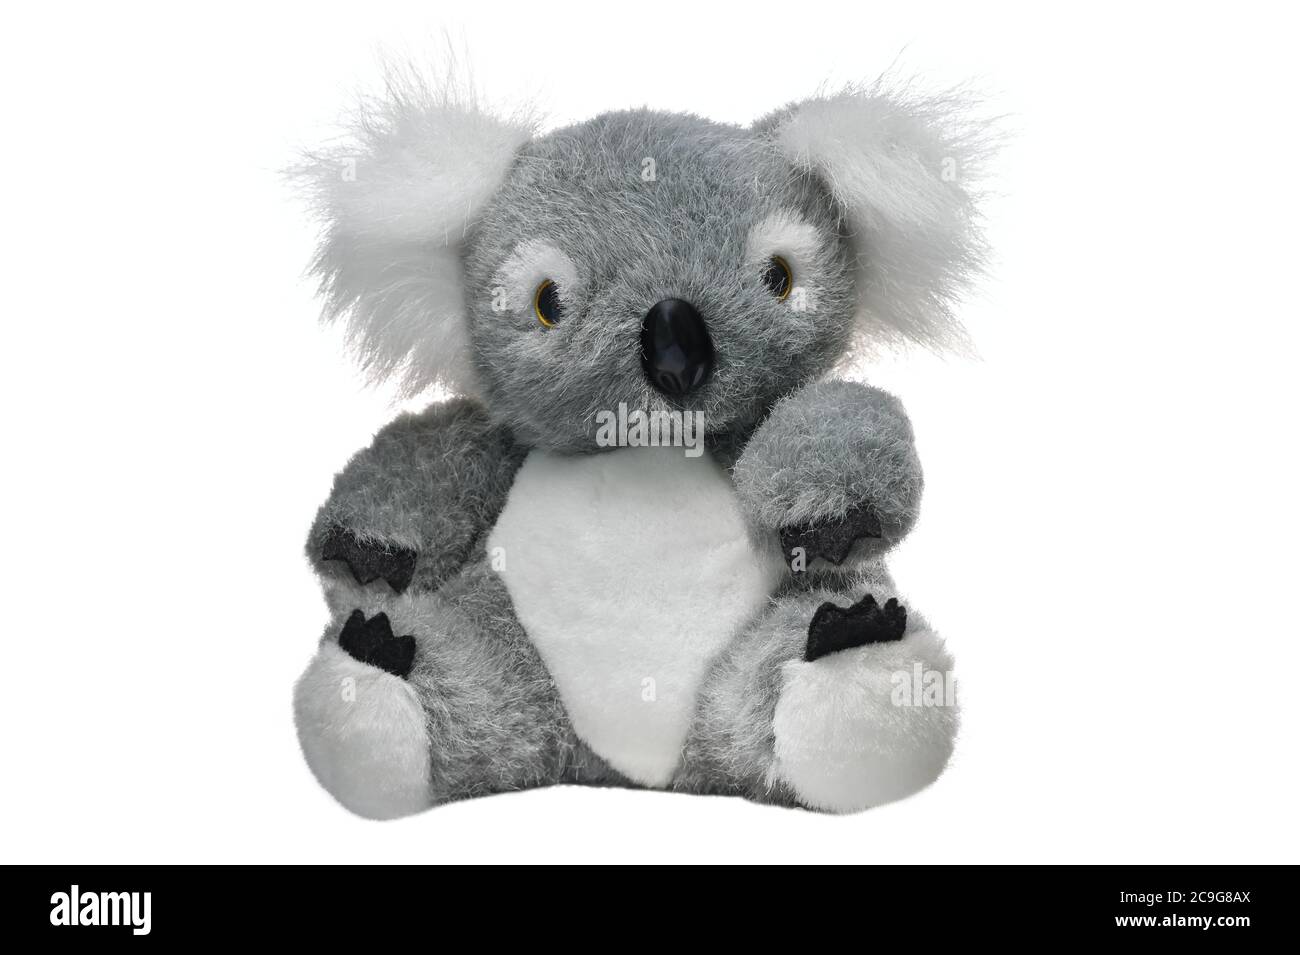 Souvenir typique de l'Australie. Ours koala en peluche isolé sur fond blanc. Banque D'Images